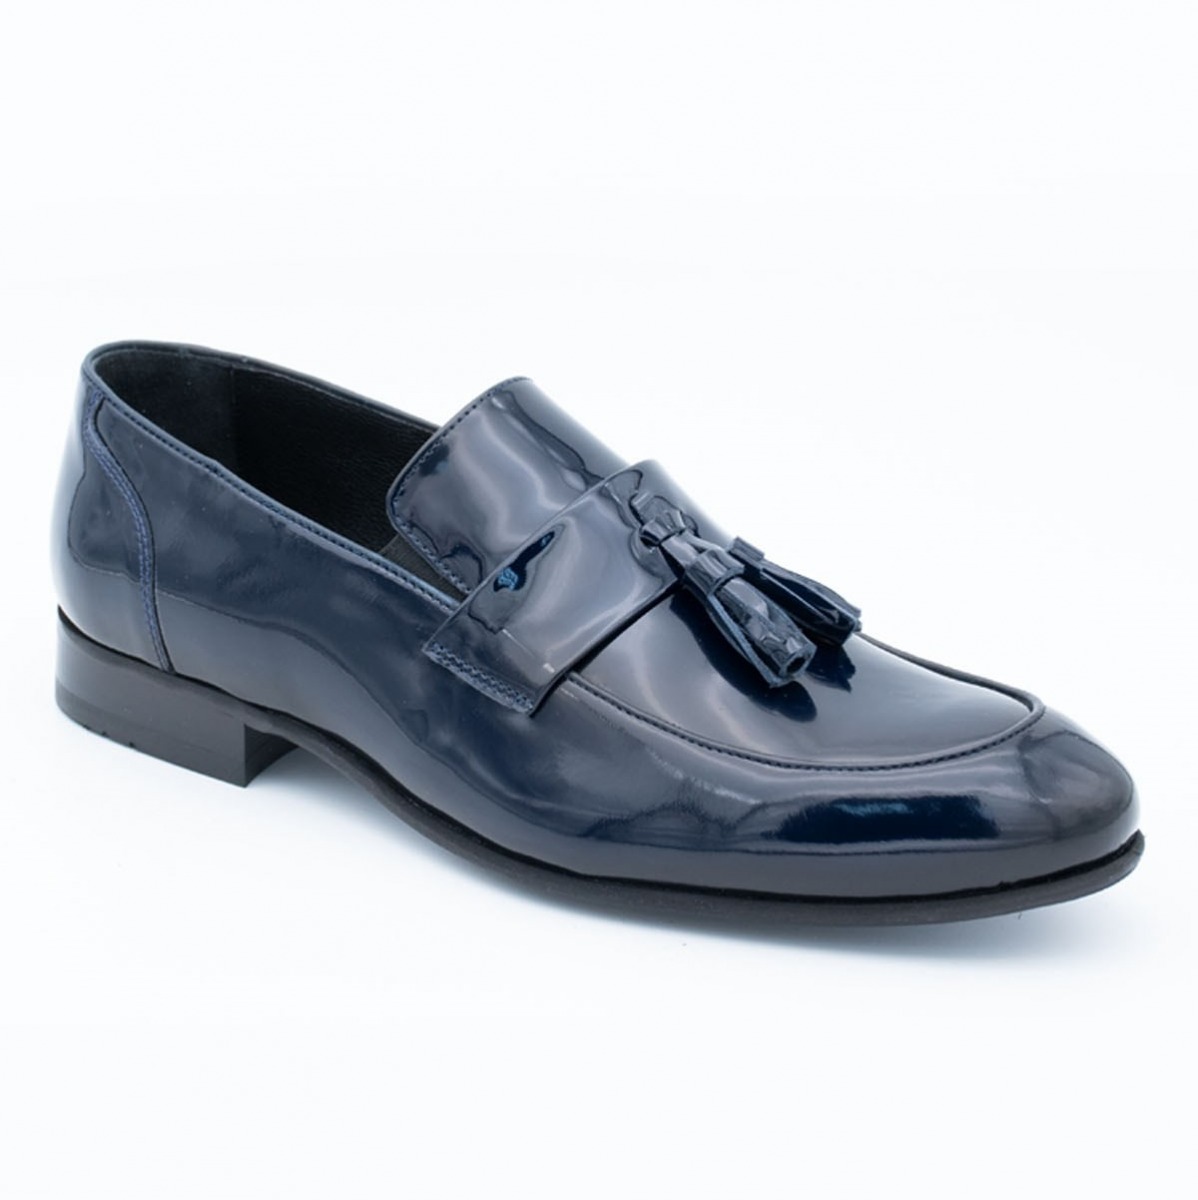 Flo Erkek Deri Klasik Ayakkabı İ1811459-1 M 1000 LACİVERT RUGAN. 2